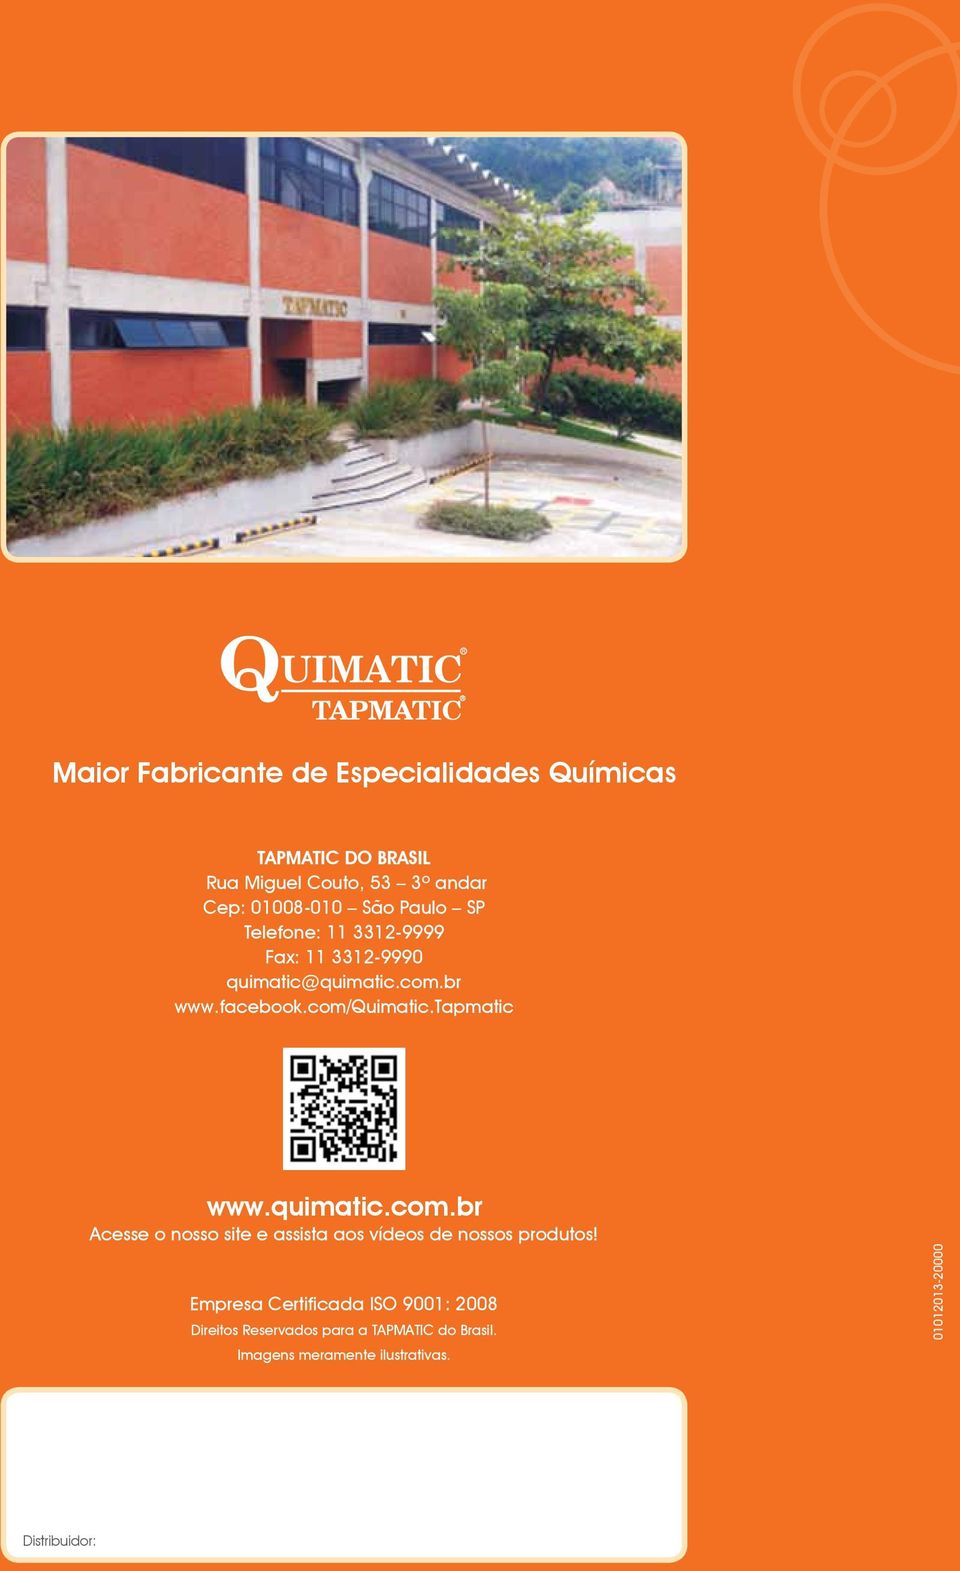 tapmatic www.quimatic.com.br Acesse o nosso site e assista aos vídeos de nossos produtos!